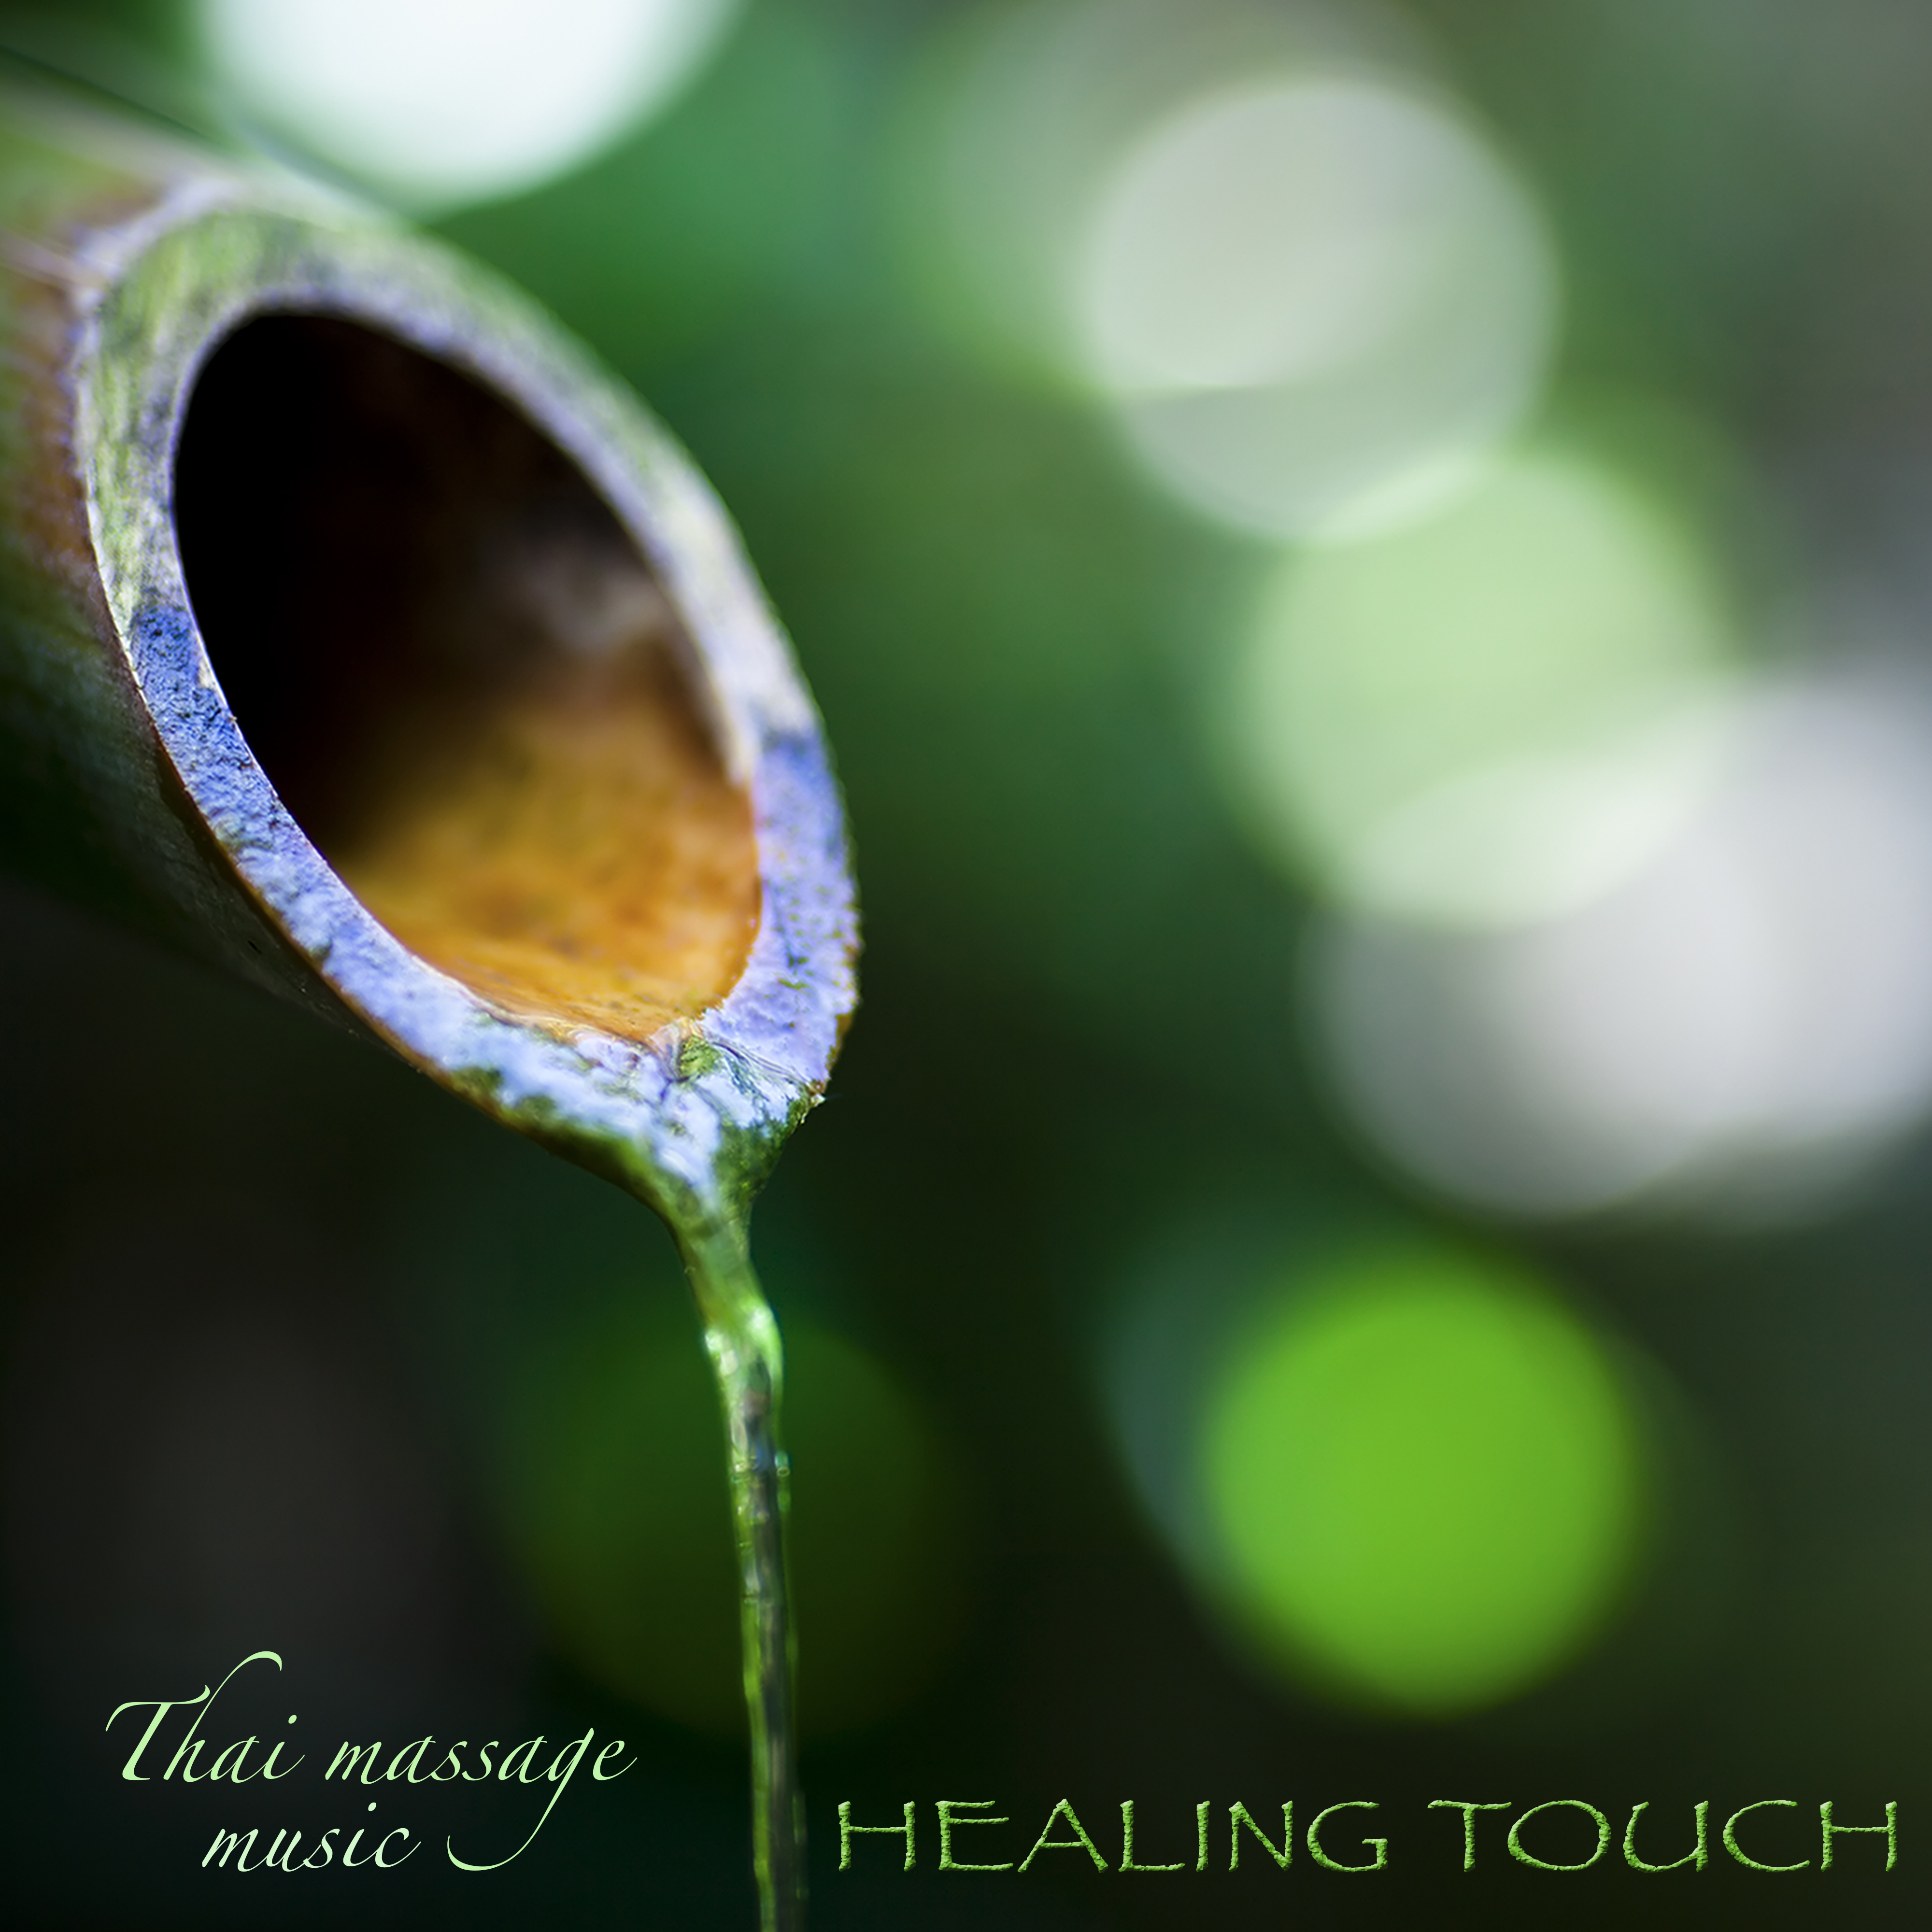 Healing Touch Thai Massage Music  Relaxing Zen Music for Massage, Beauty Spa  Deep Relaxation